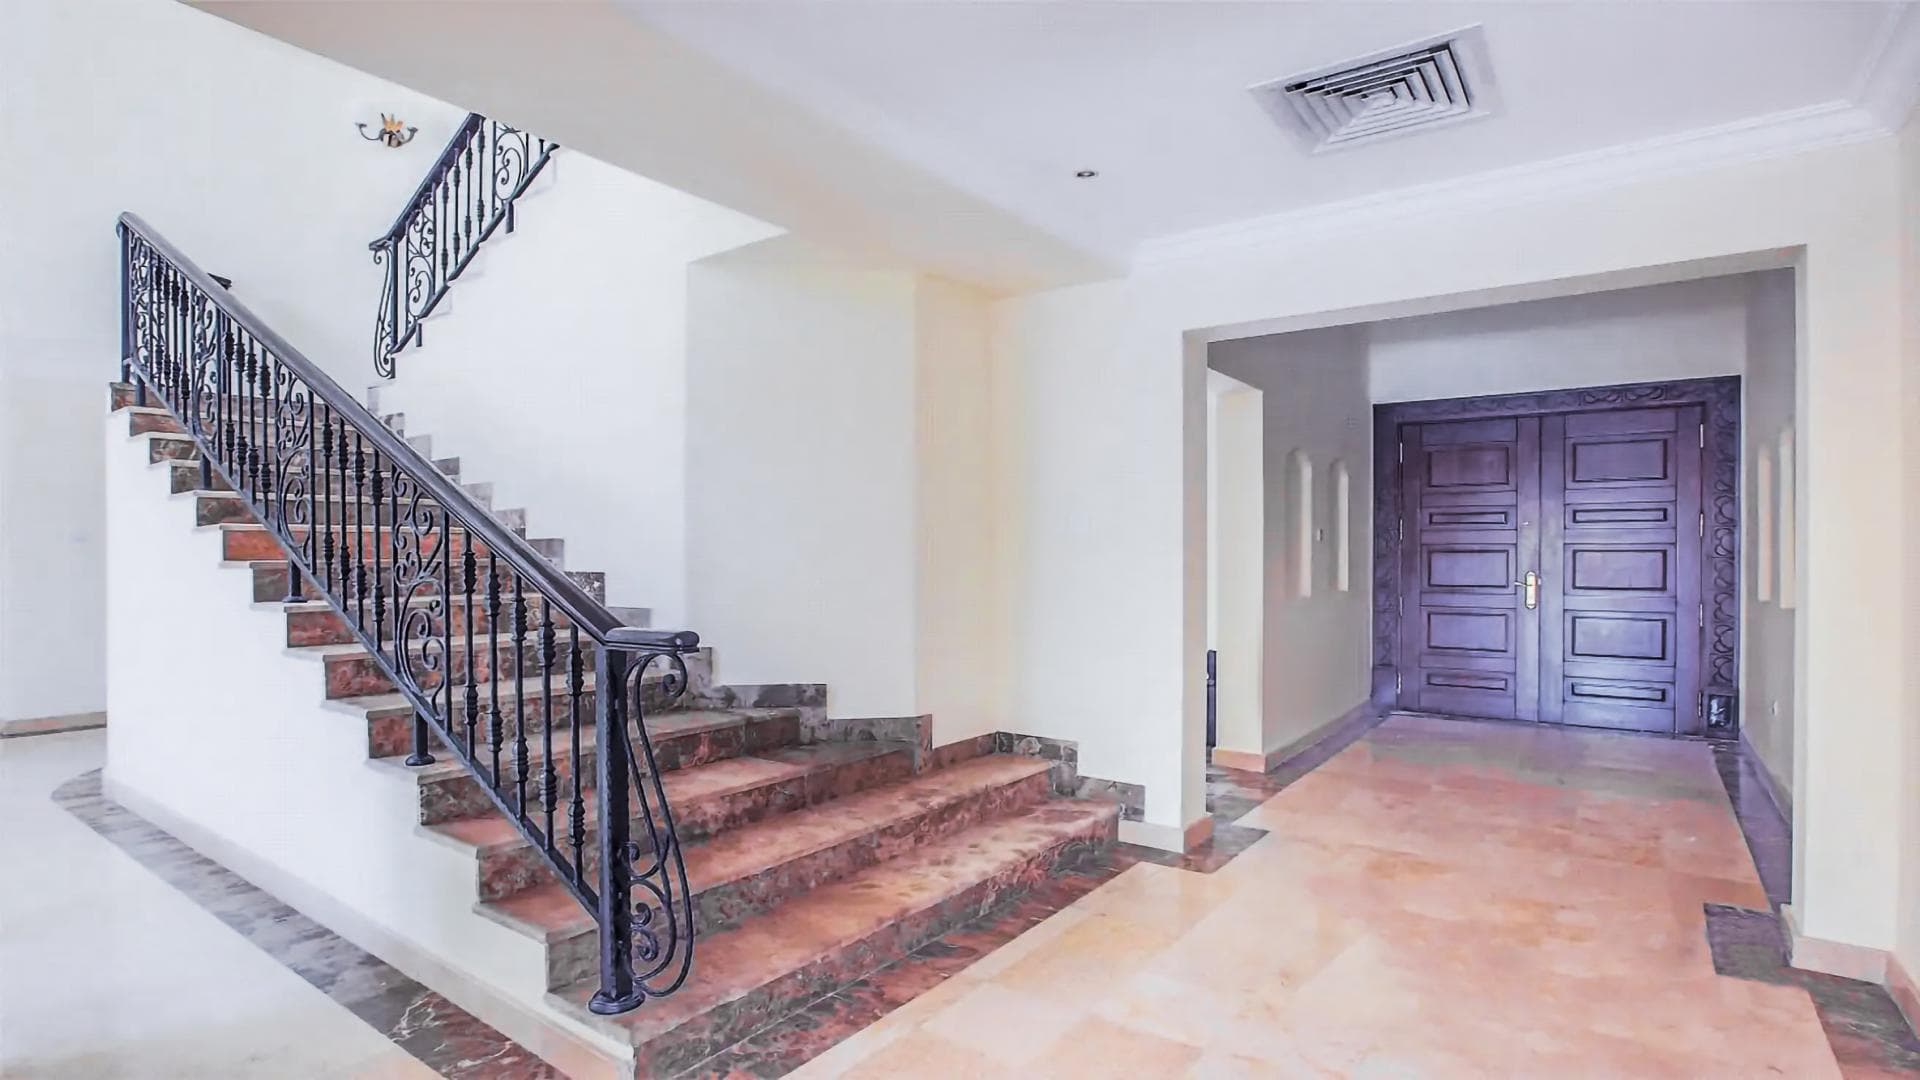 4 Bedroom Villa For Rent Al Thamam 13 Lp36706 2d21c40dd6d2800.jpg